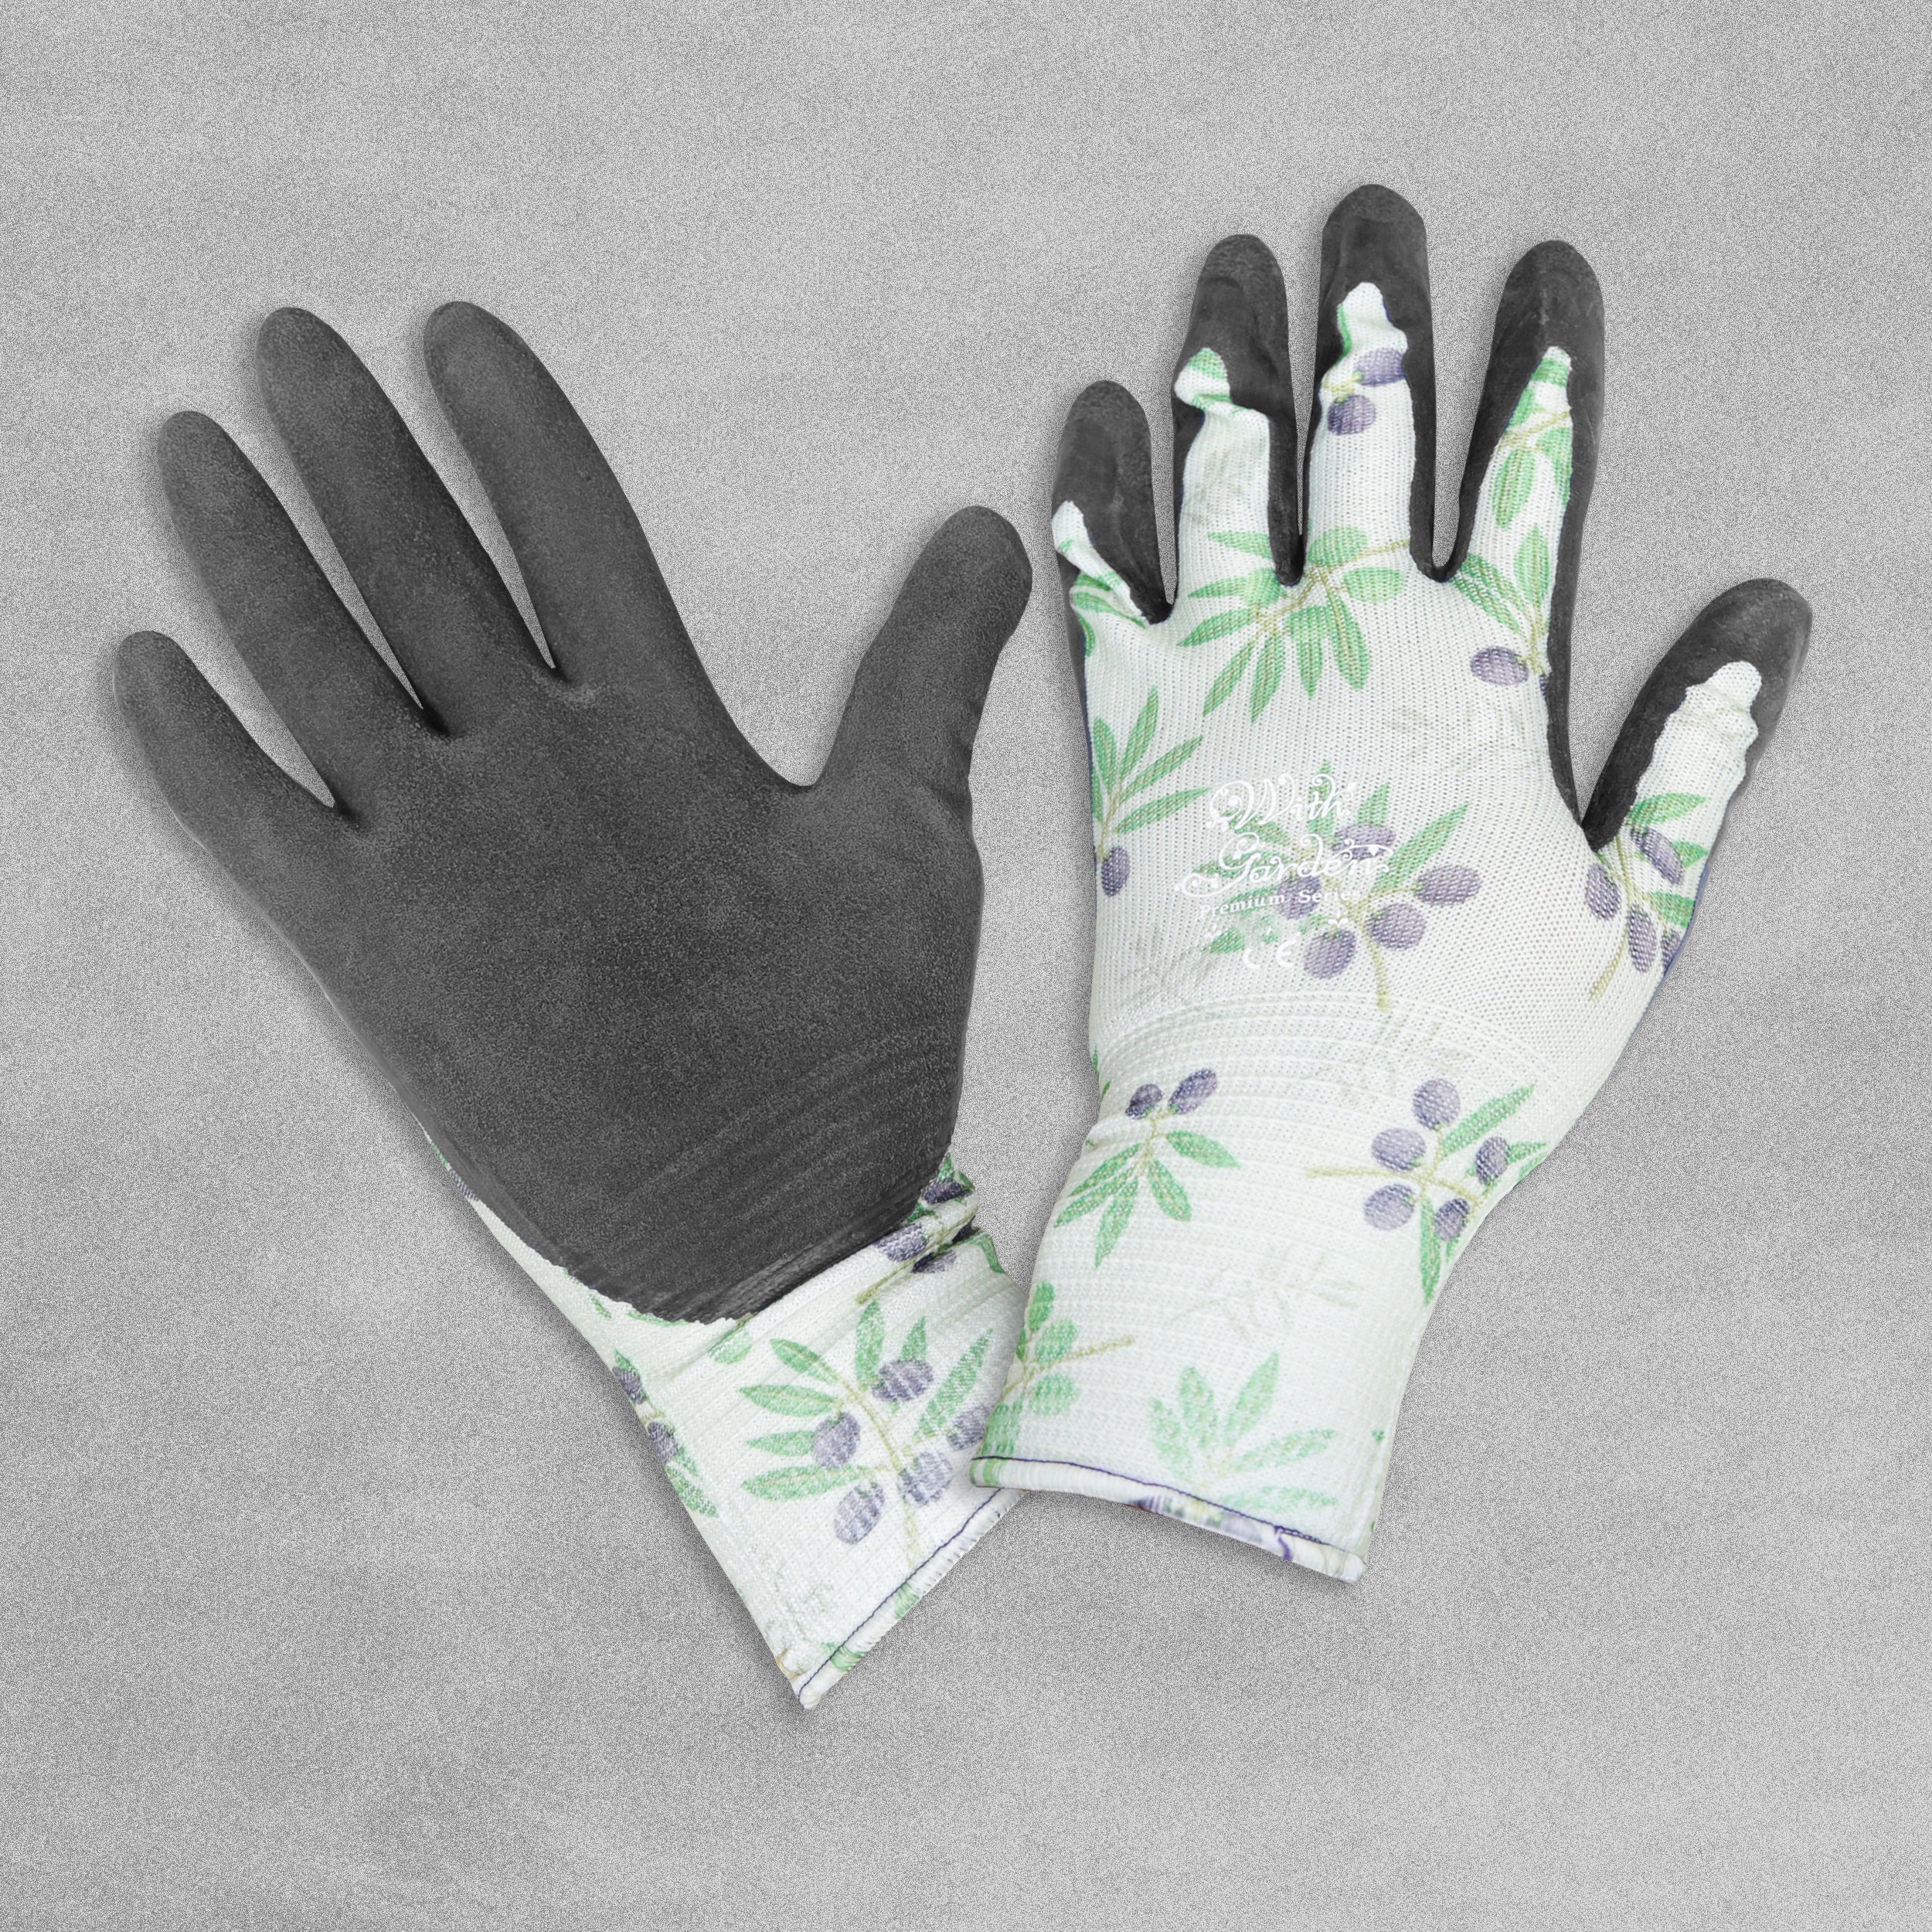 With Garden Premium Luminus Garden gloves - Green Olives design with black nitrile palm